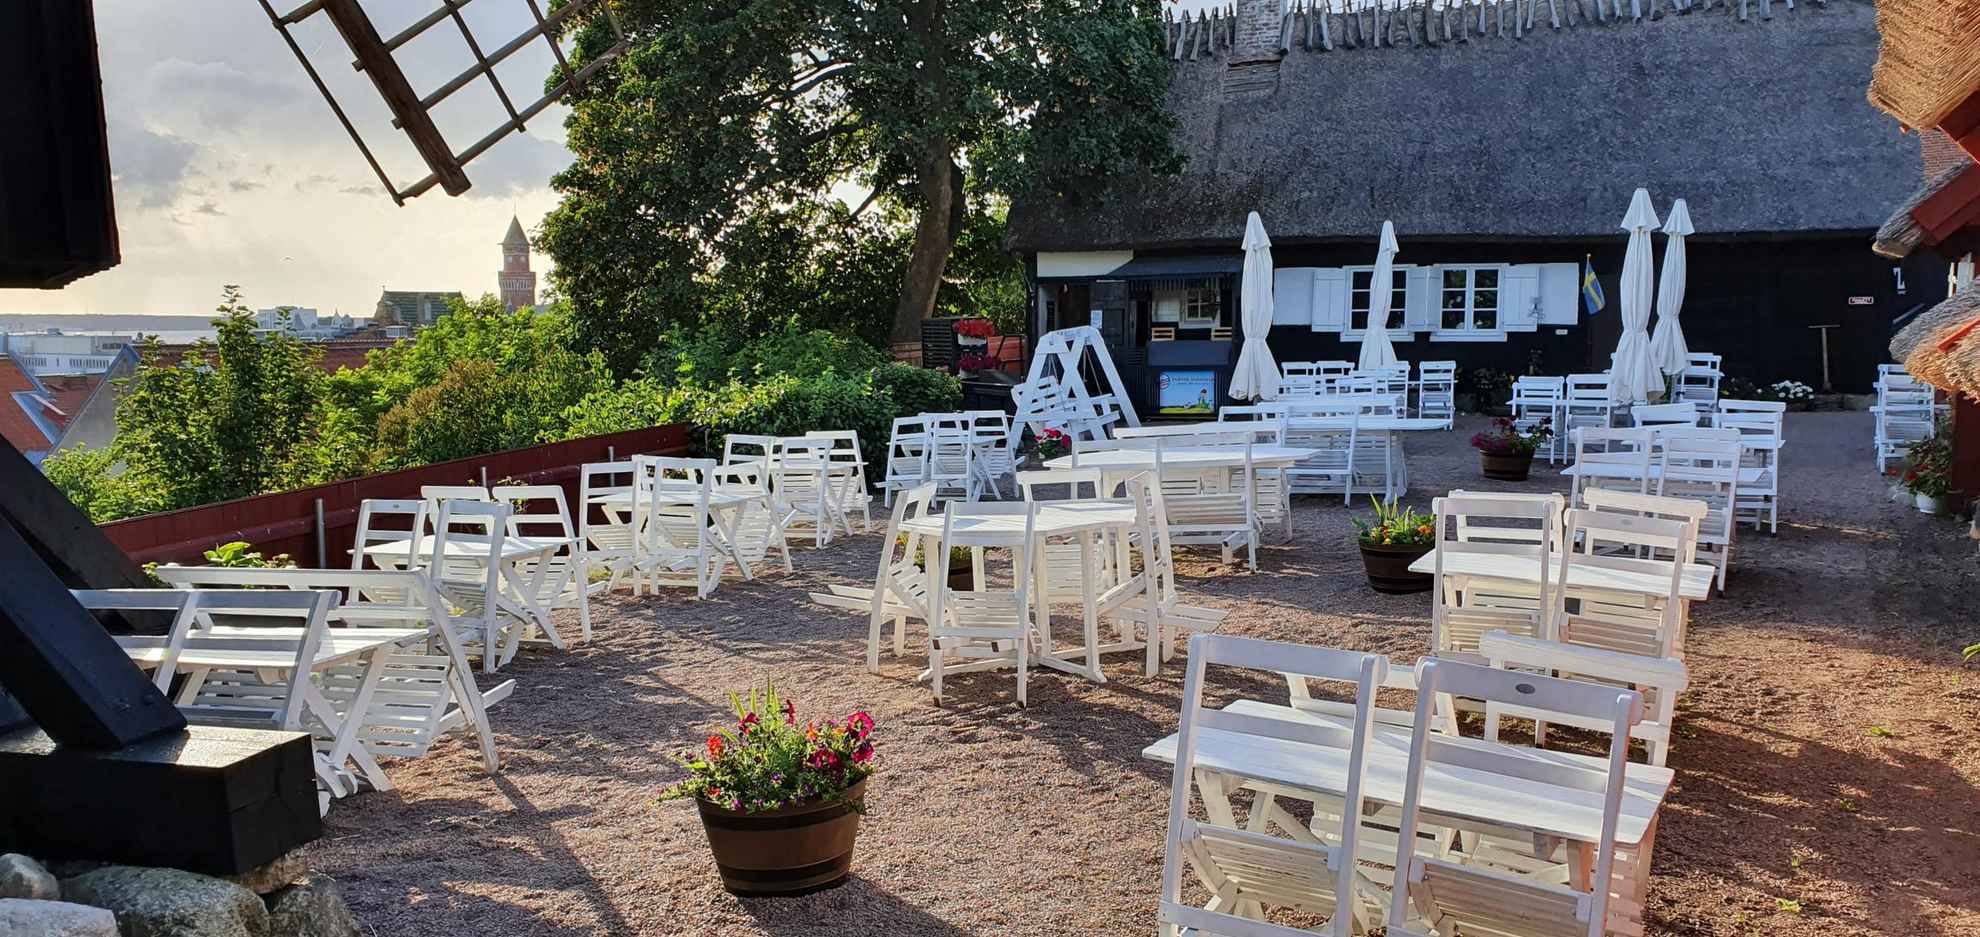 Ein Sitzbereich im Freien mit weißen Tischen und Stühlen in einem Restaurant und Café. Ein altes Haus und ein großer Baum im Hintergrund.